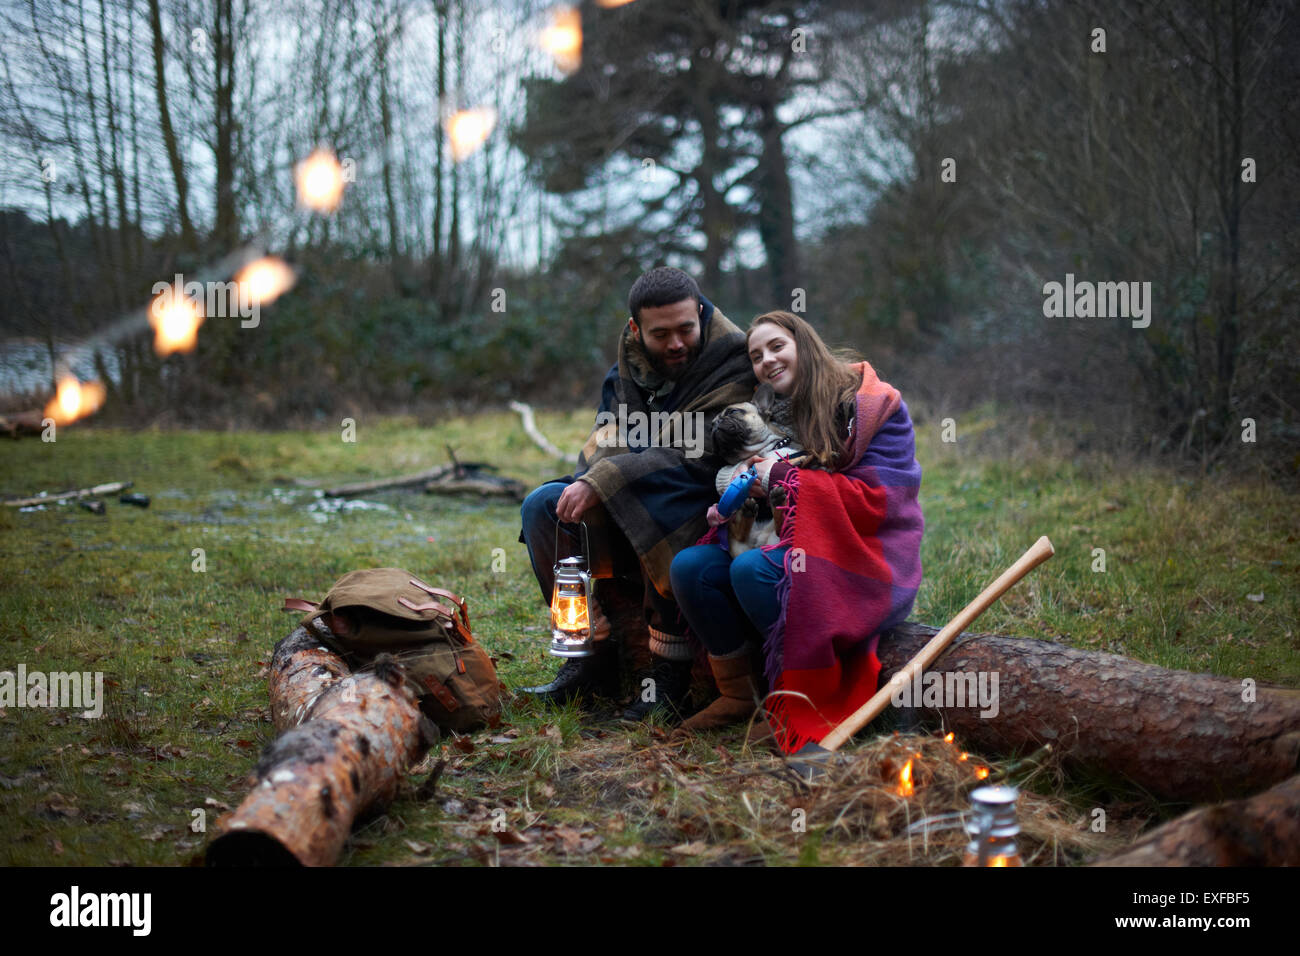 Camping Pärchen mit Hund in Decke im Wald gehüllt Stockfoto